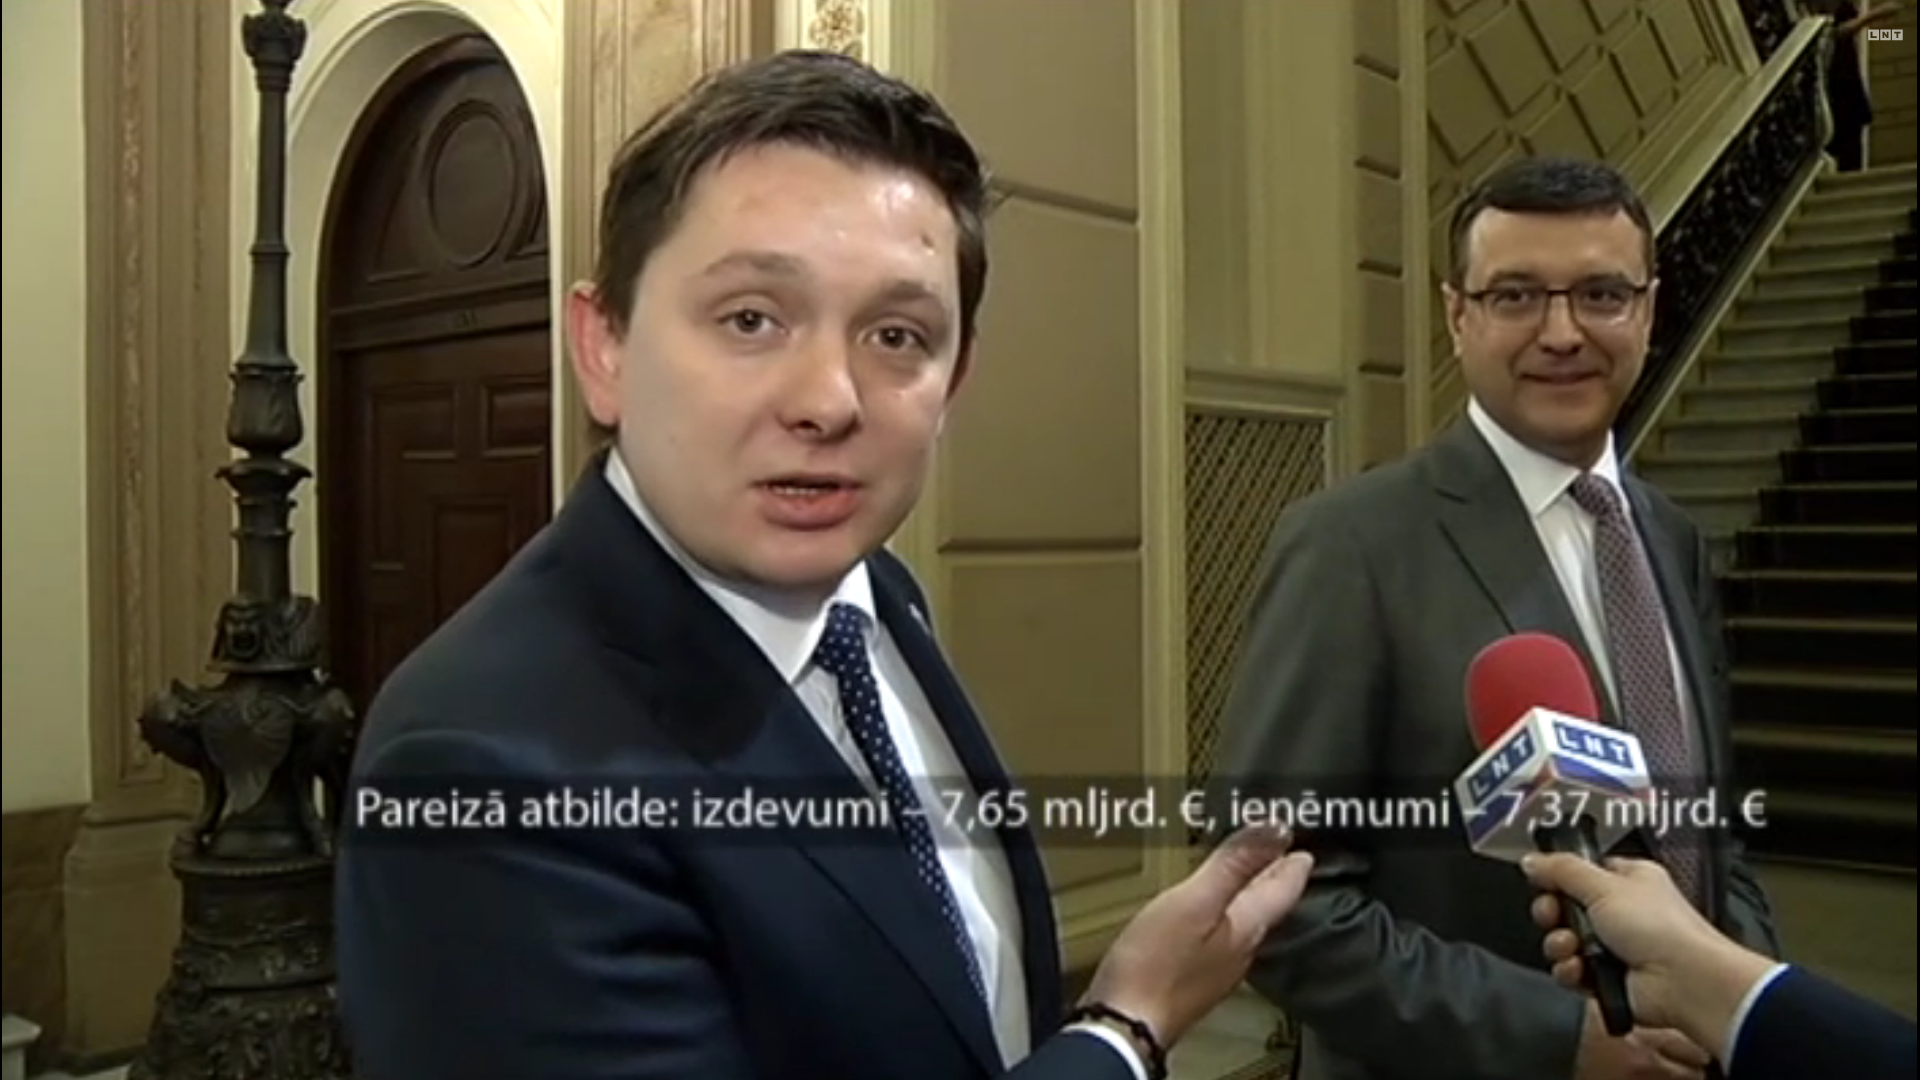 VIDEO: Saeimas deputātu trūcīgās zināšanas par valsts budžetu jeb “Tie jau tie naivie pirmsskolas jautājumi!”